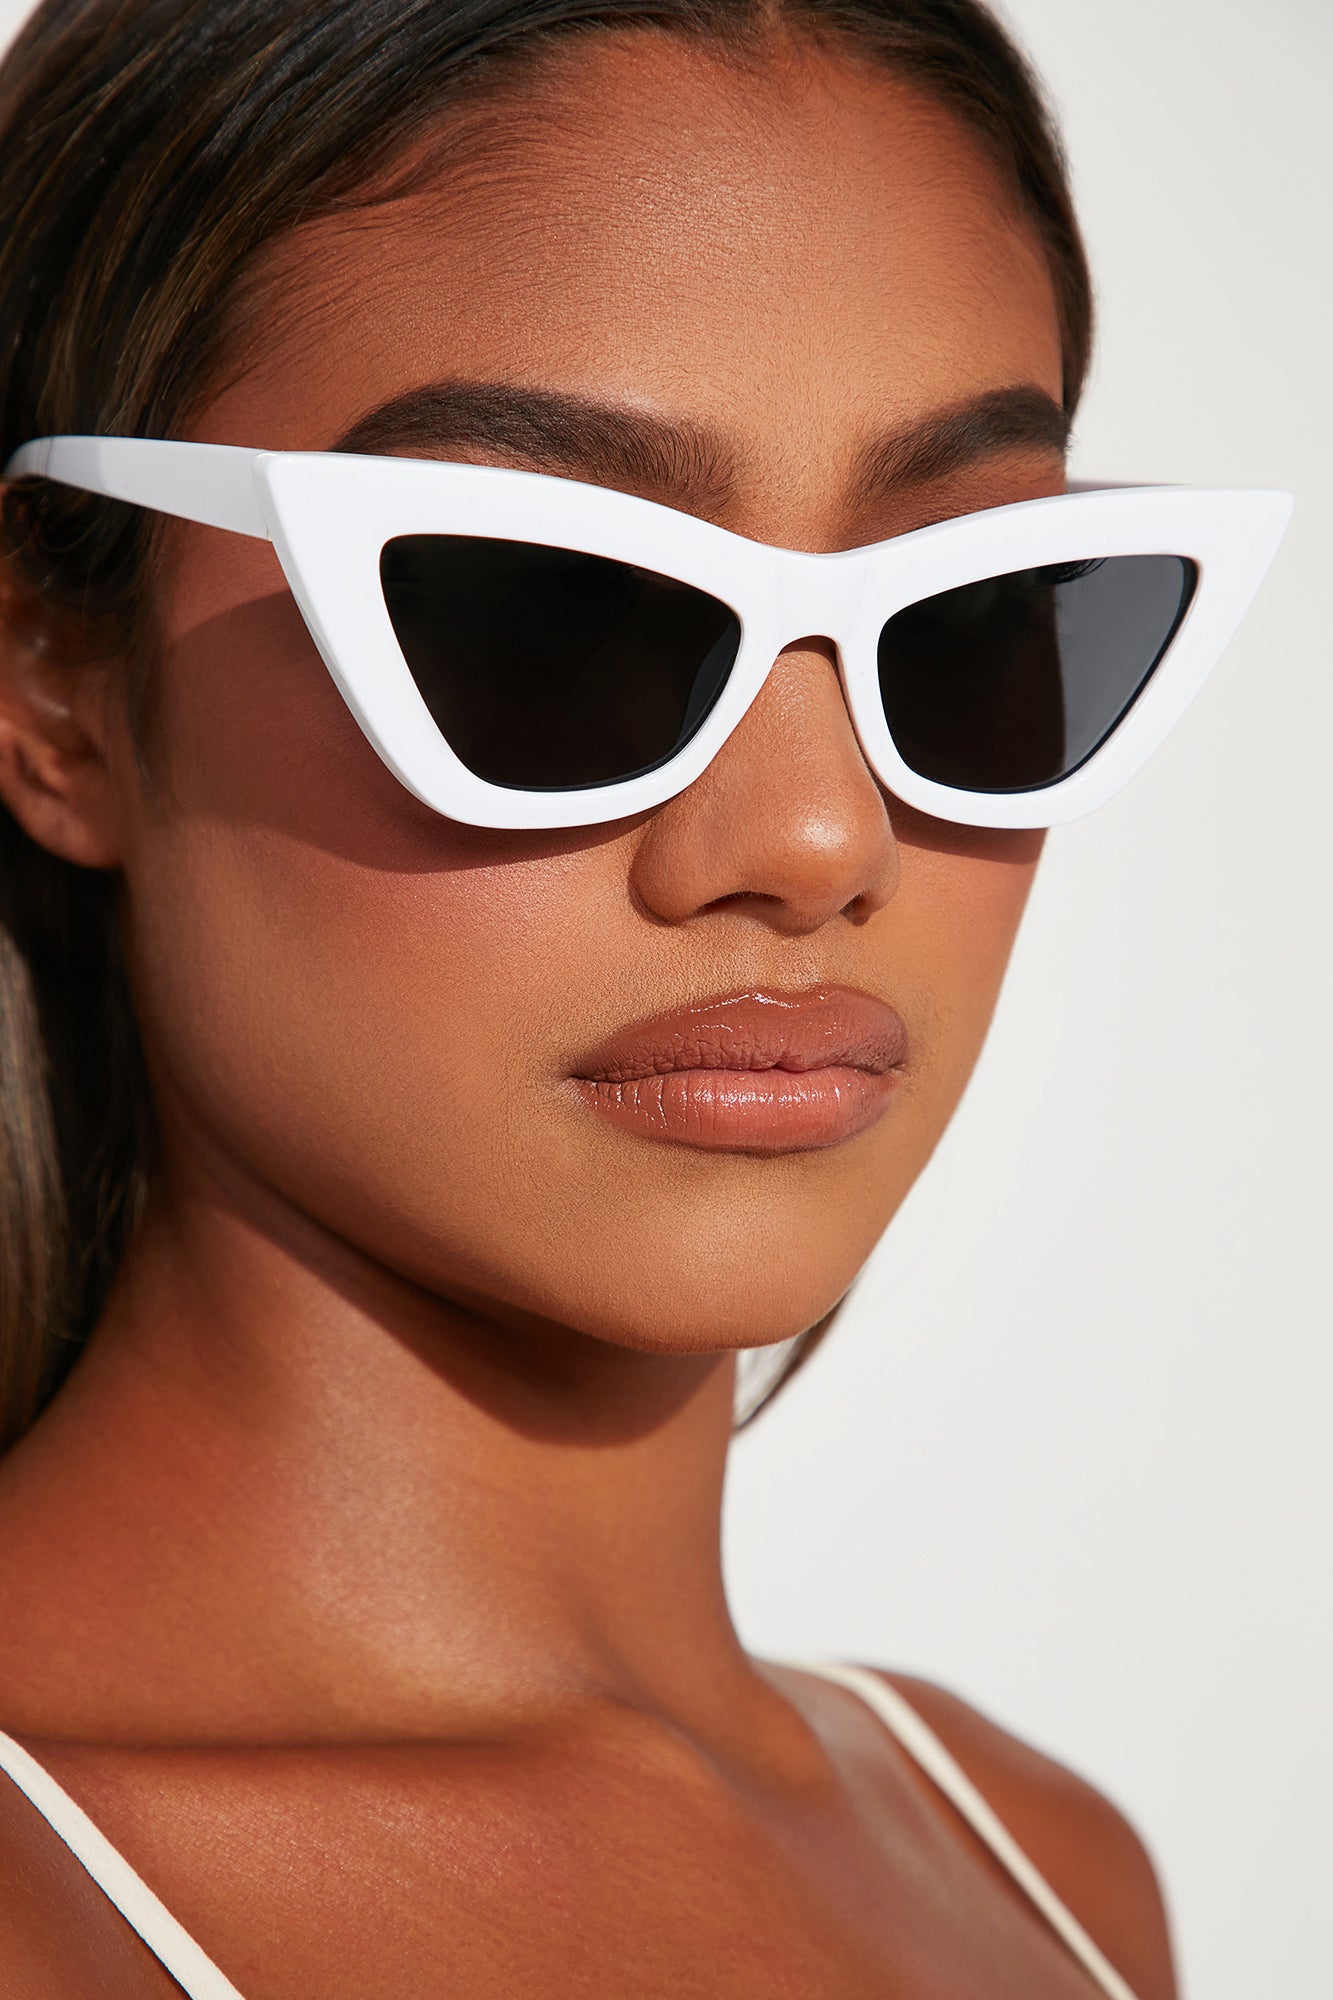 Thin Patience Sunglasses - White, Fashion Nova, Sunglasses